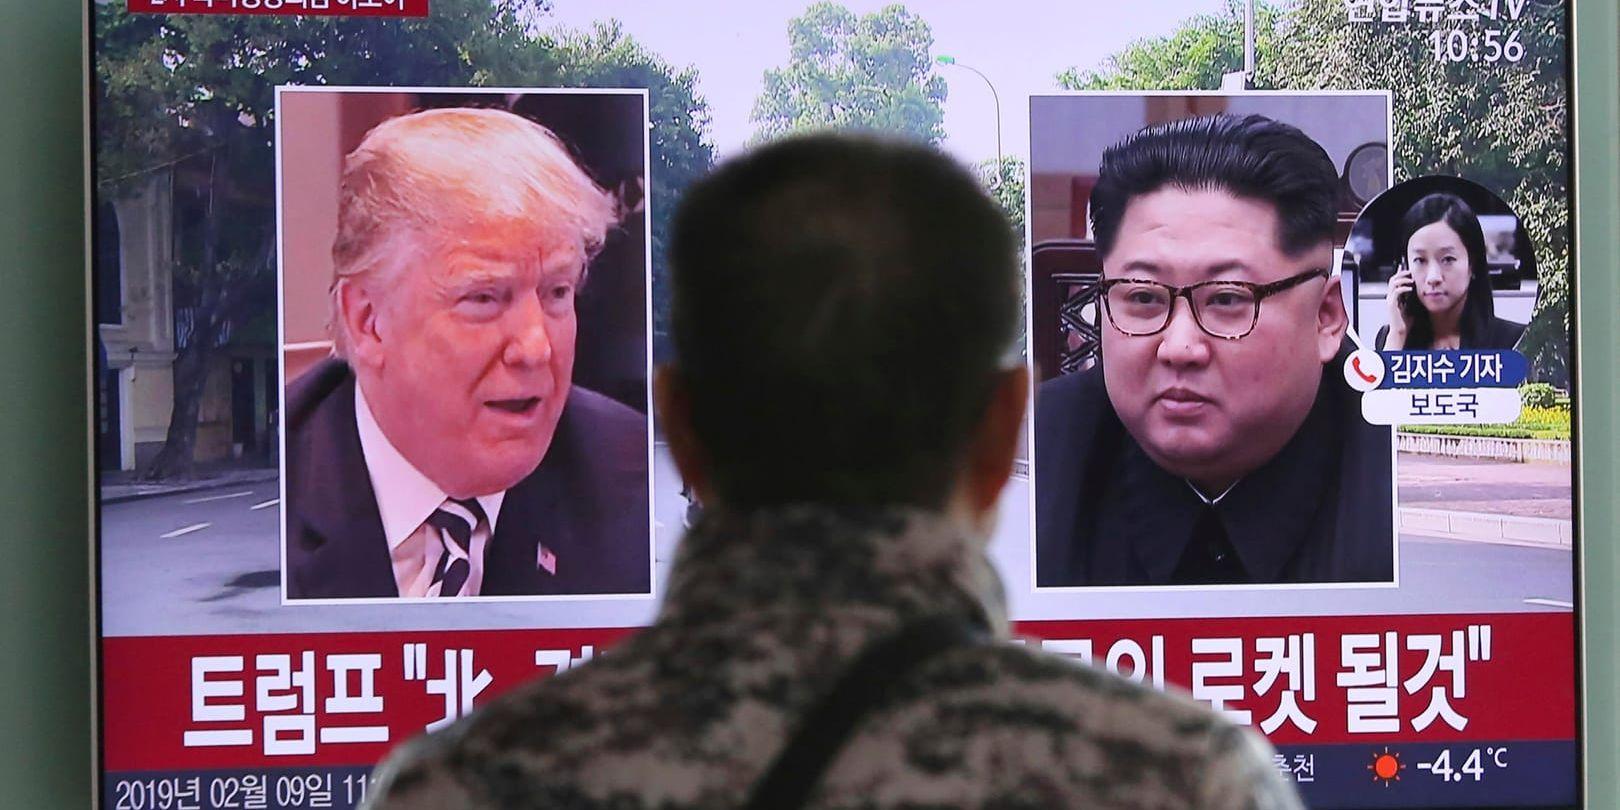 Trump och Kim Jong-Un ska snart träffas en andra gång – och nu ställs helt andra krav på resultat. Arkivbild